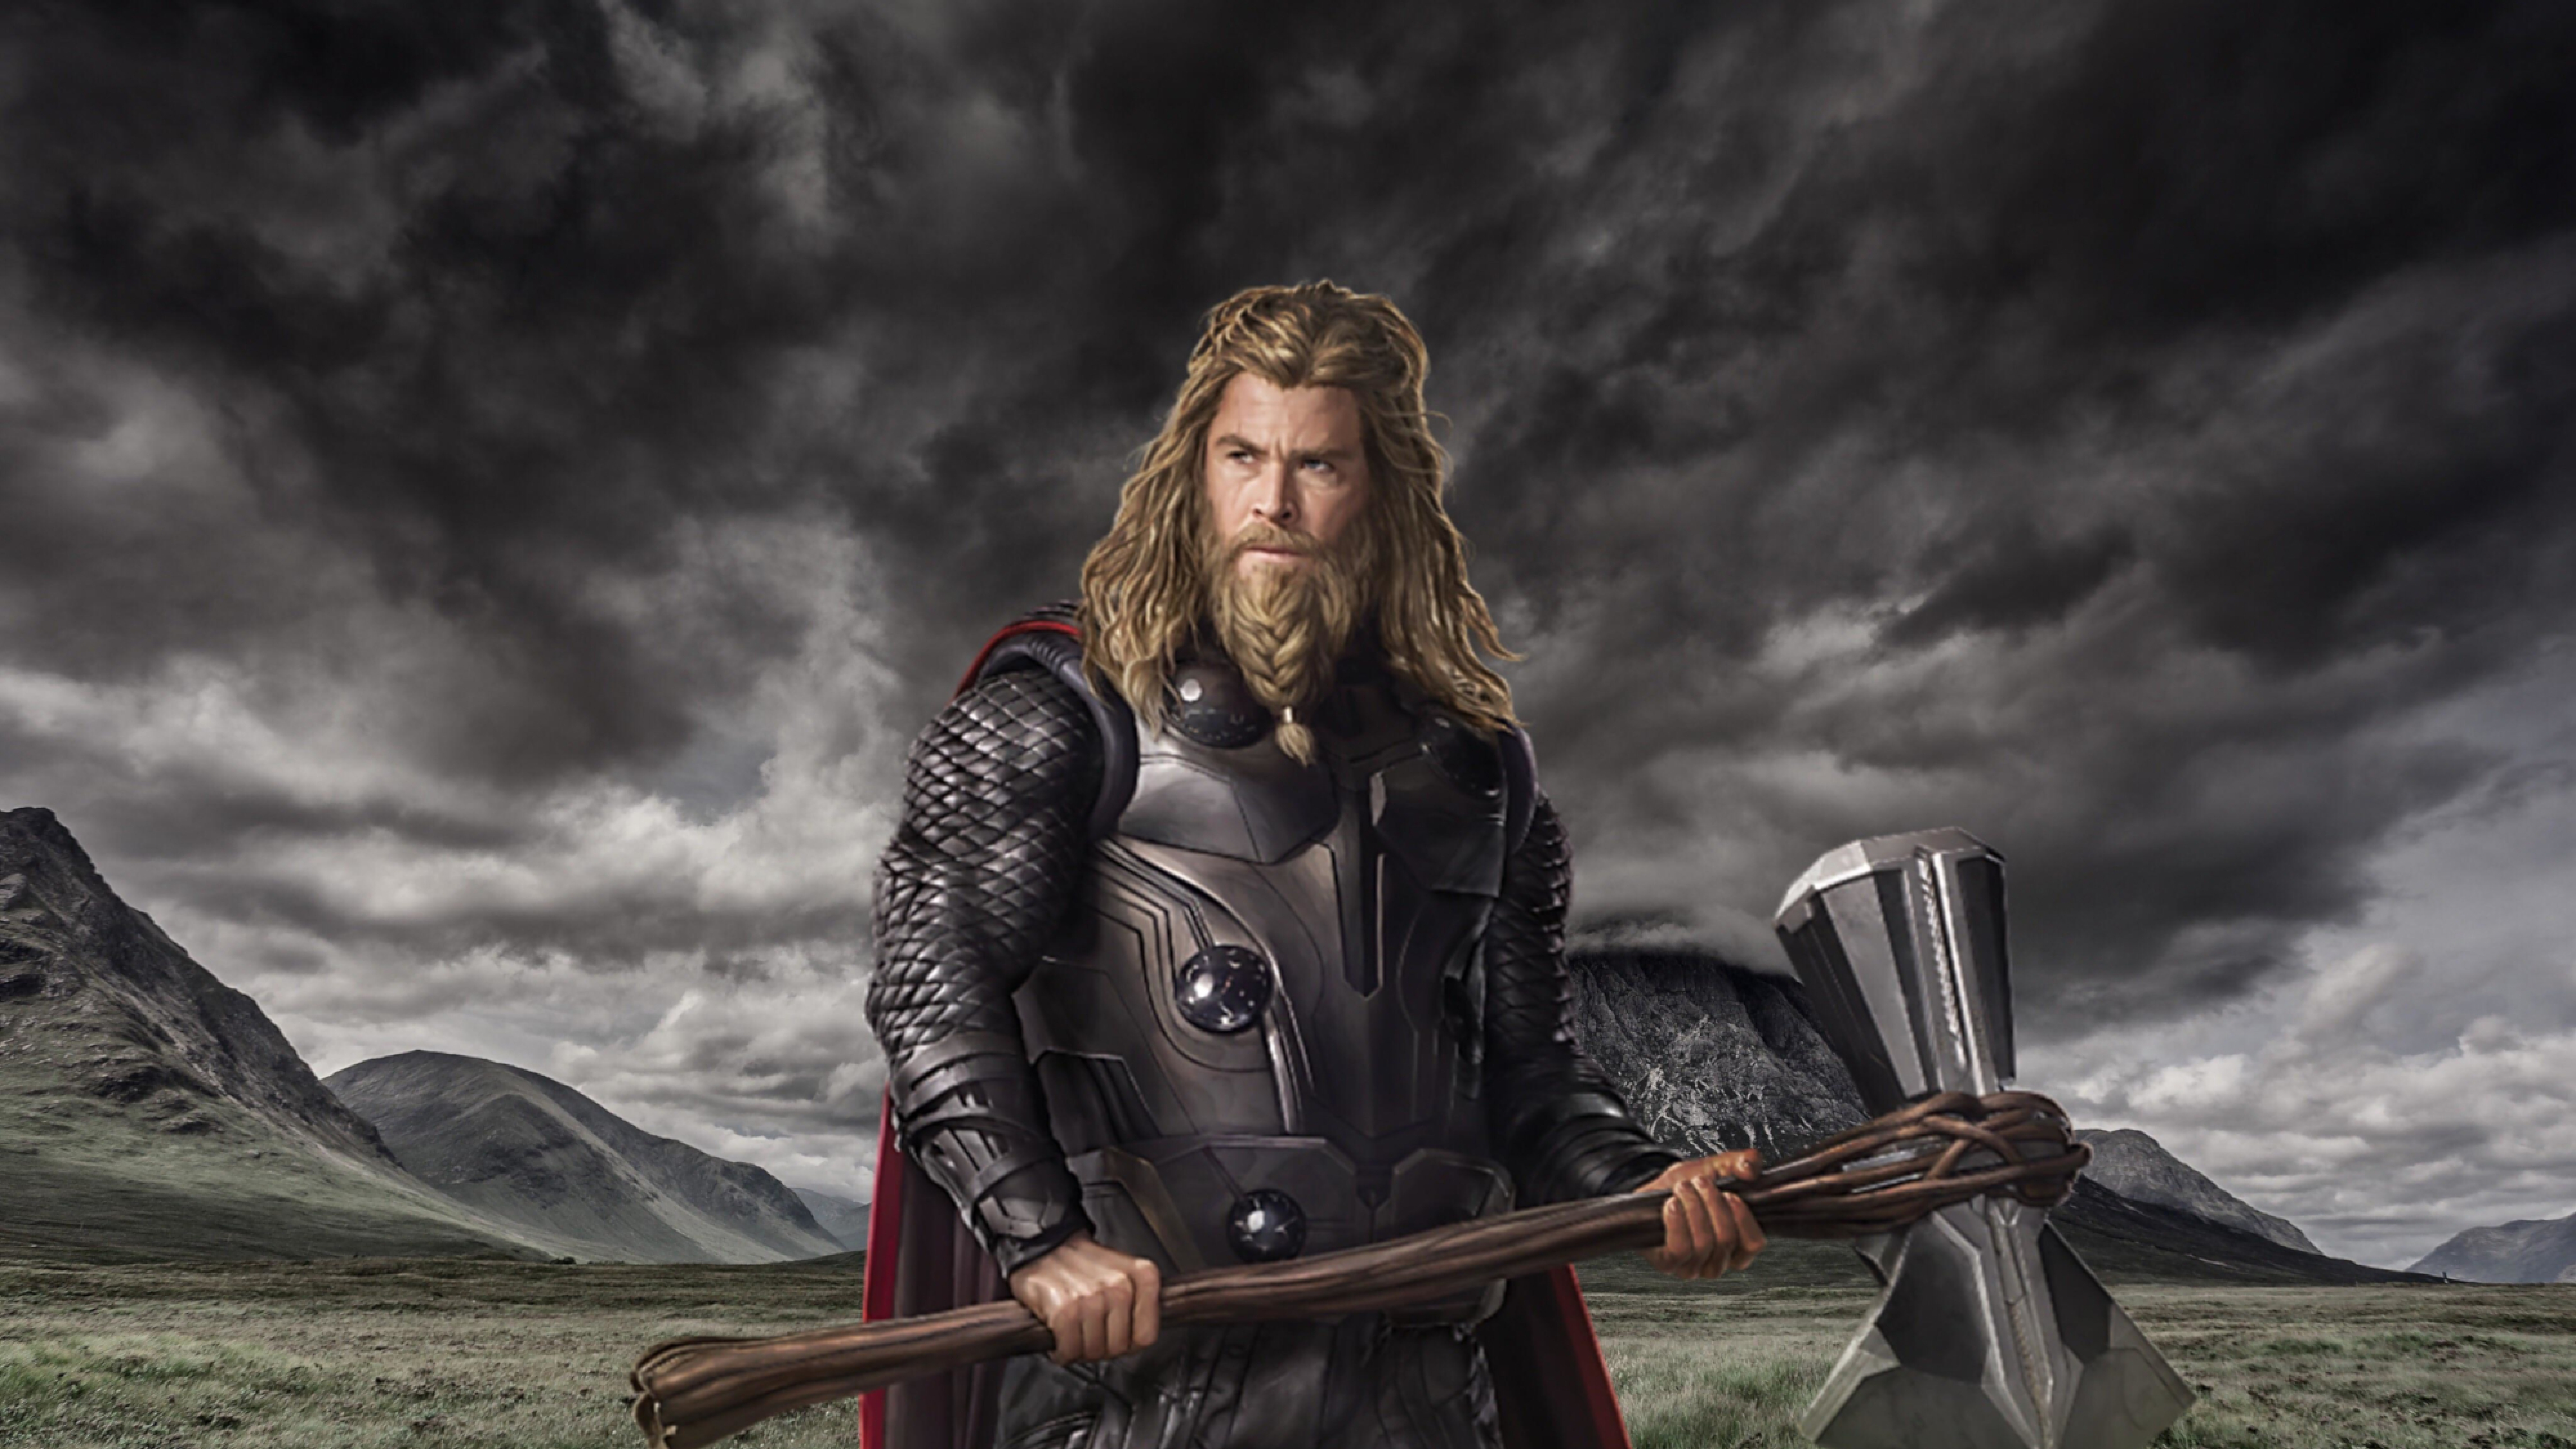 7680x4320 Chris Hemsworth As Thor  In Endgame  8K Wallpaper  